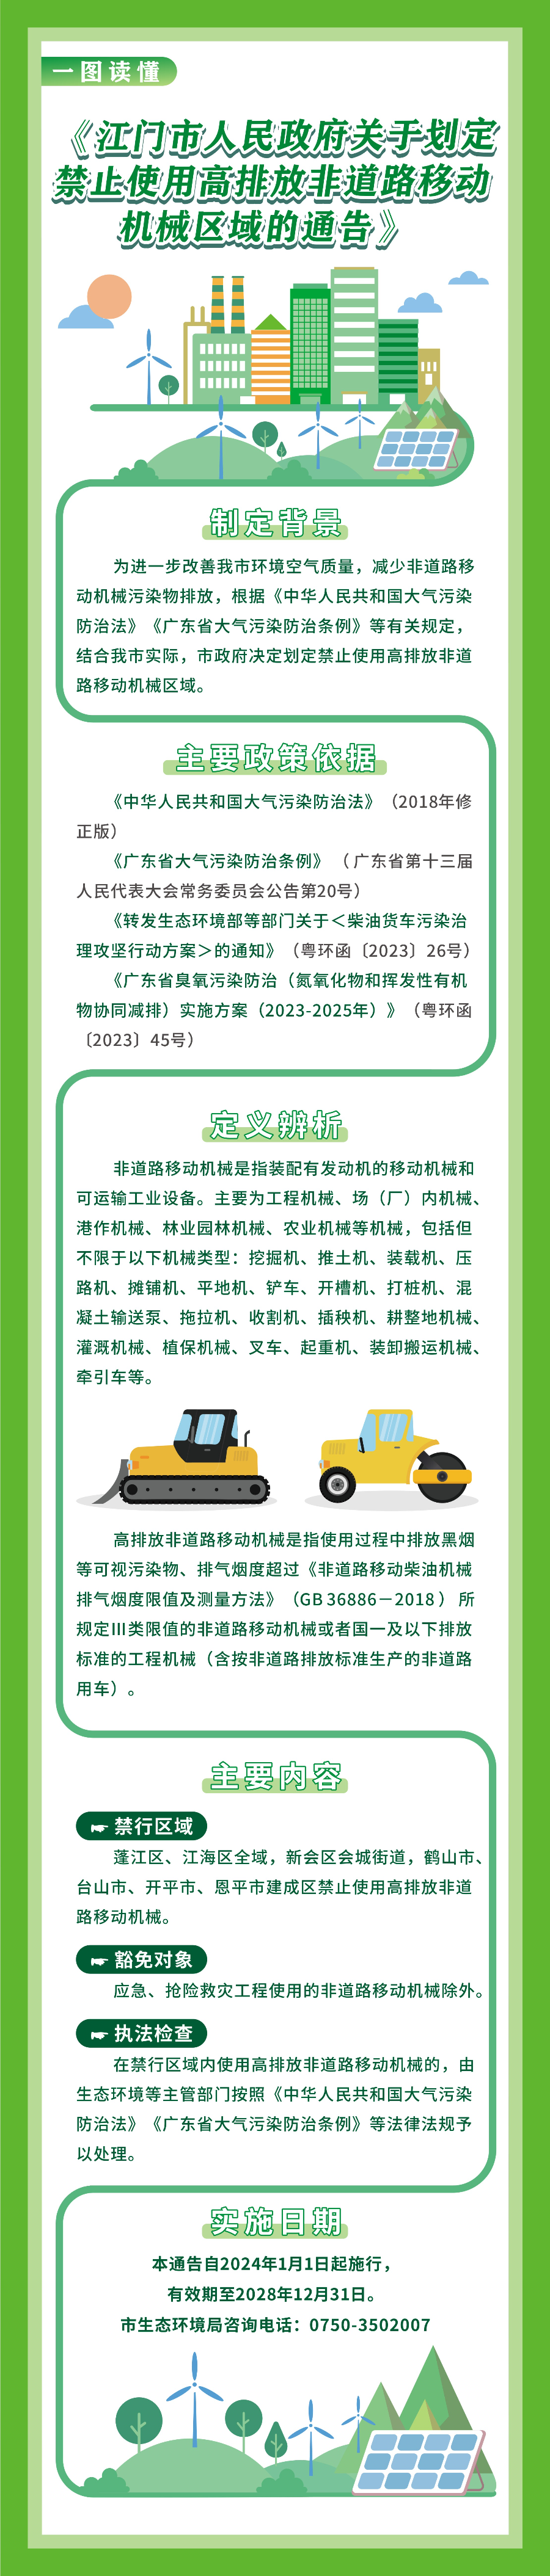 附件6、《江门市人民政府关于划定禁止使用高排放非道路移动机械区域的通告》一图读懂.jpg